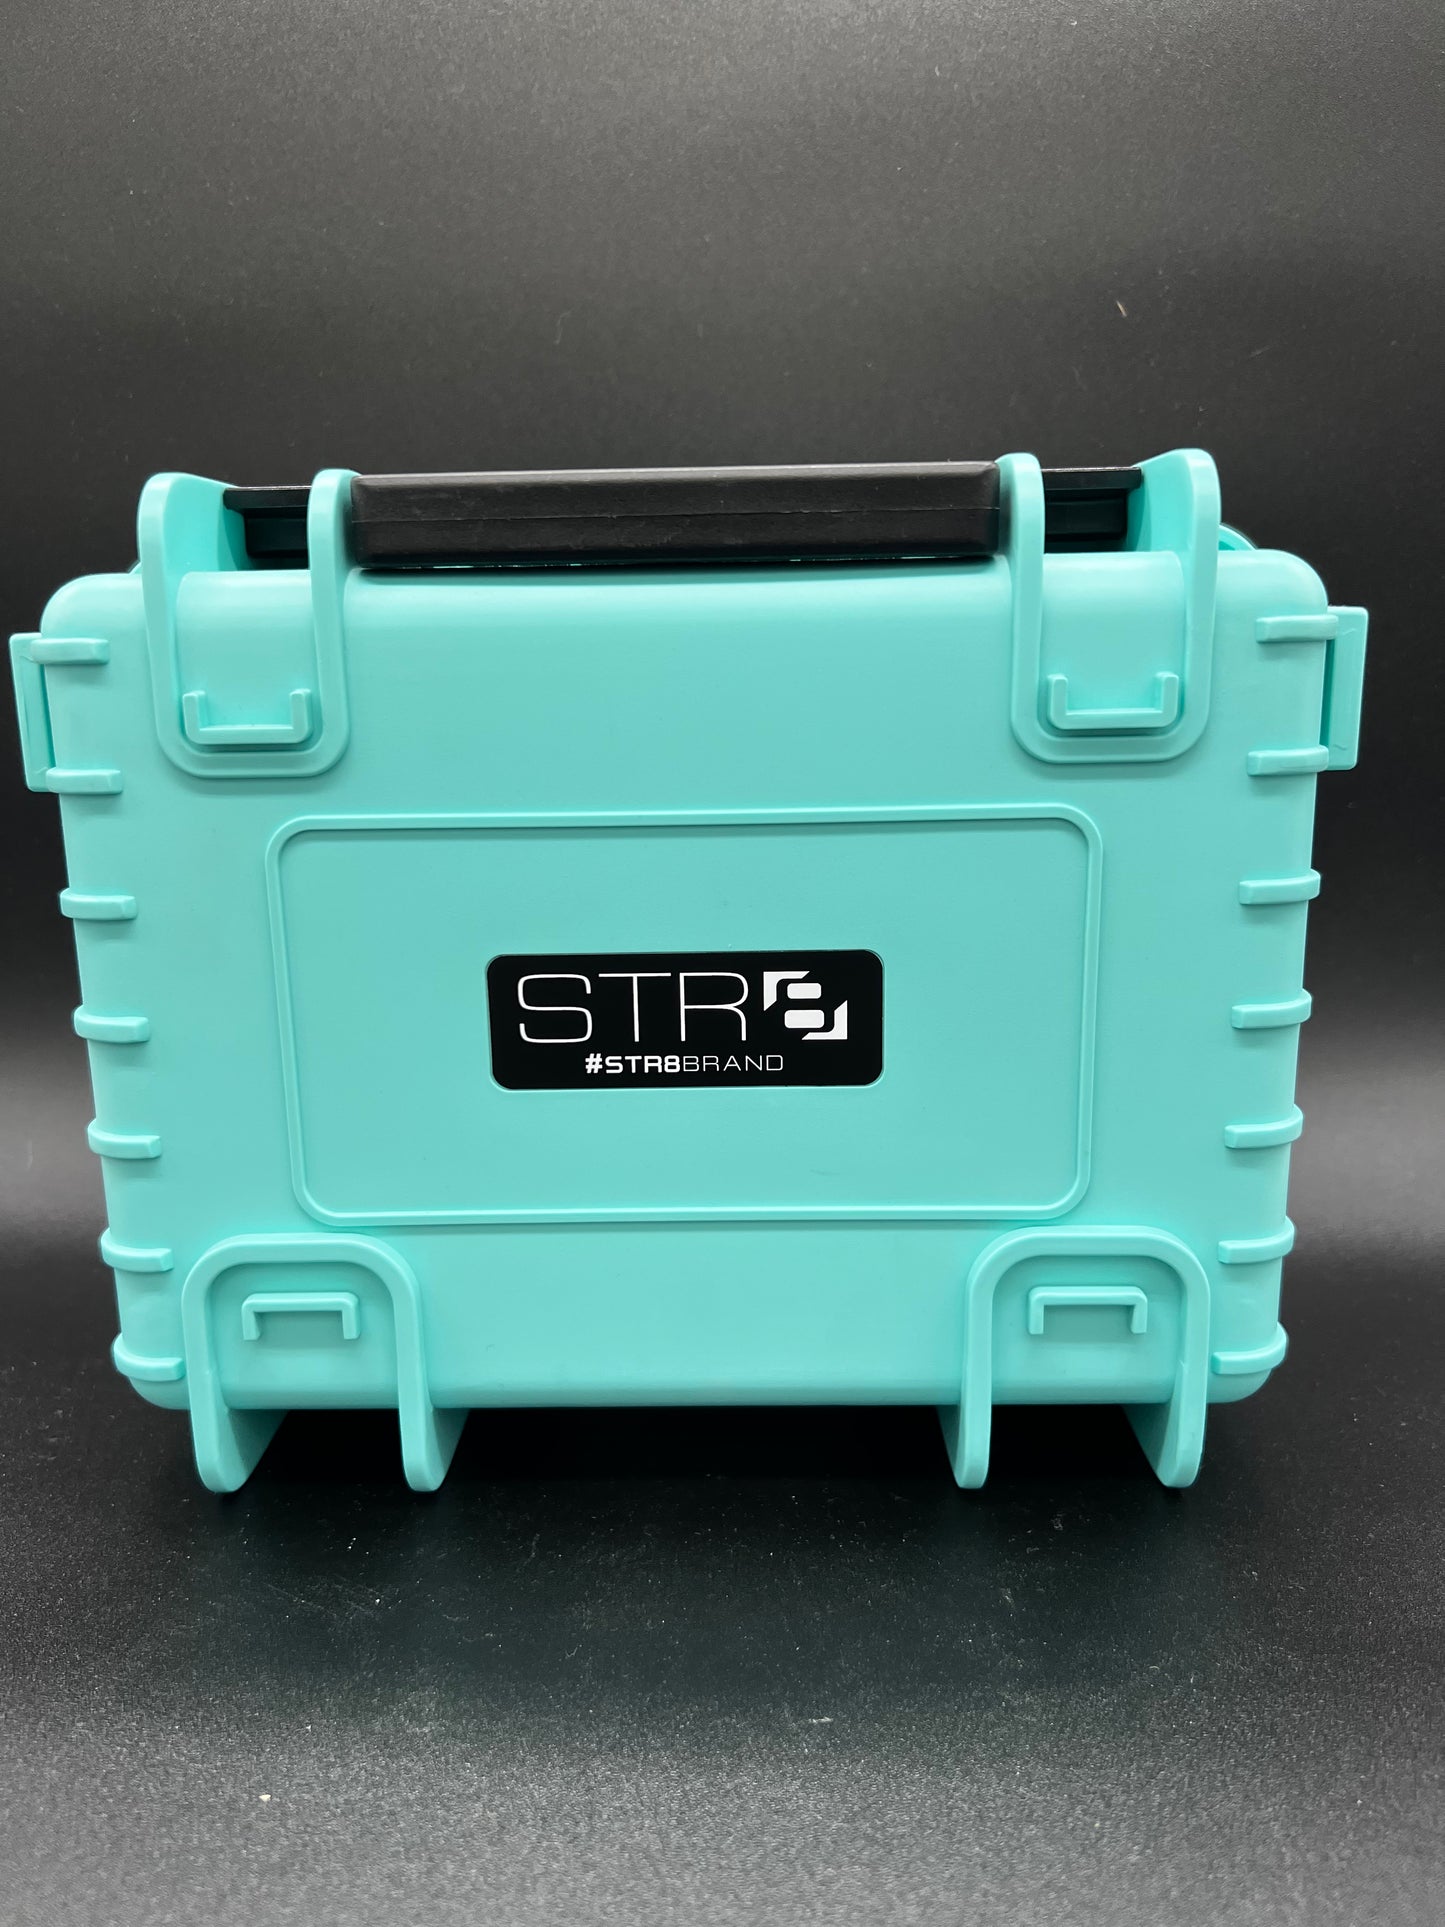 STR case